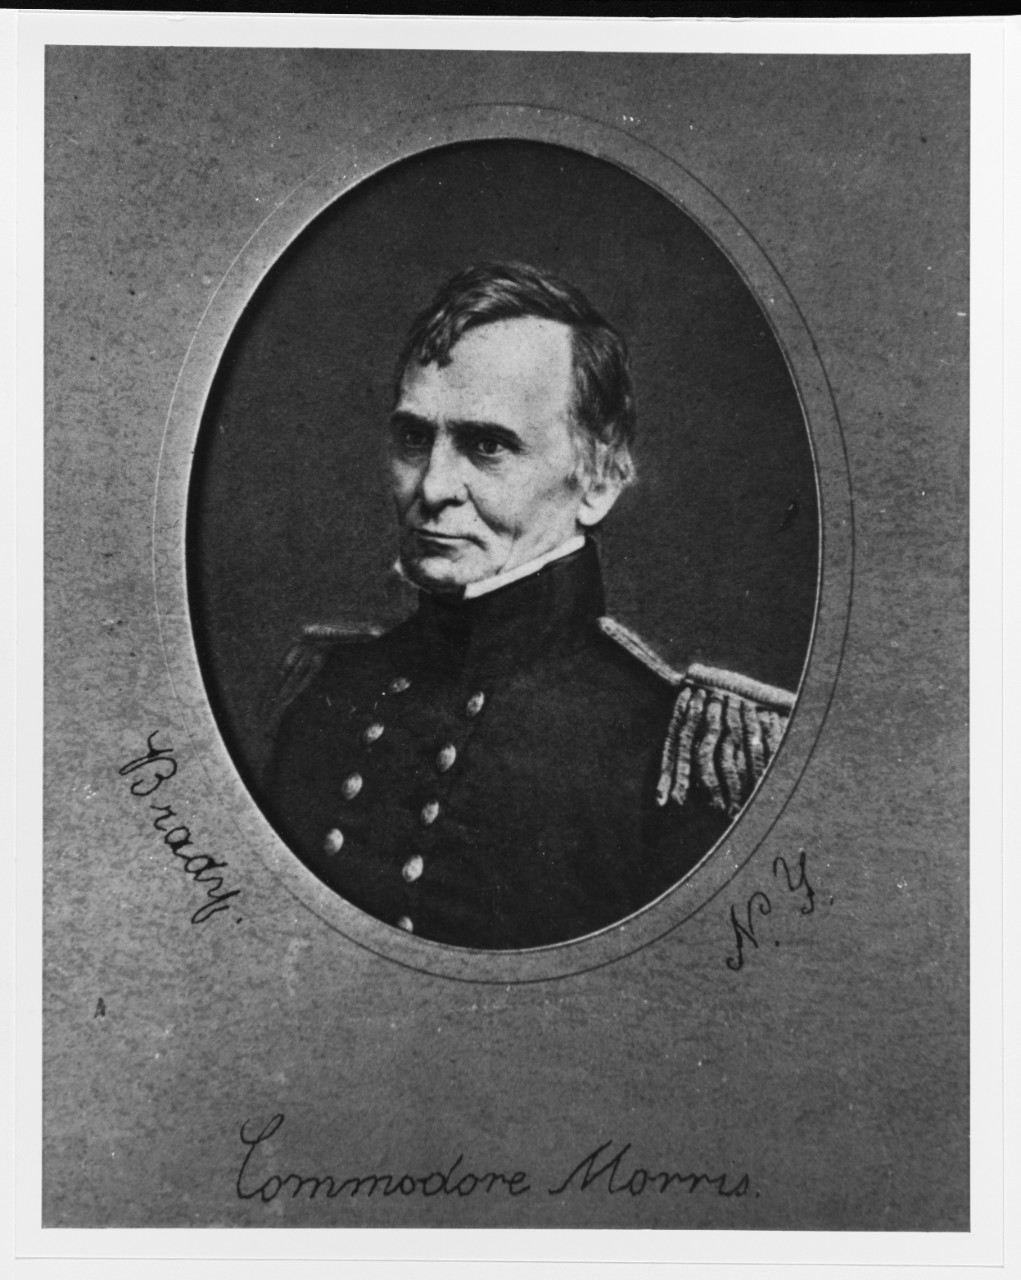 Captain Henry W. Morris, USN